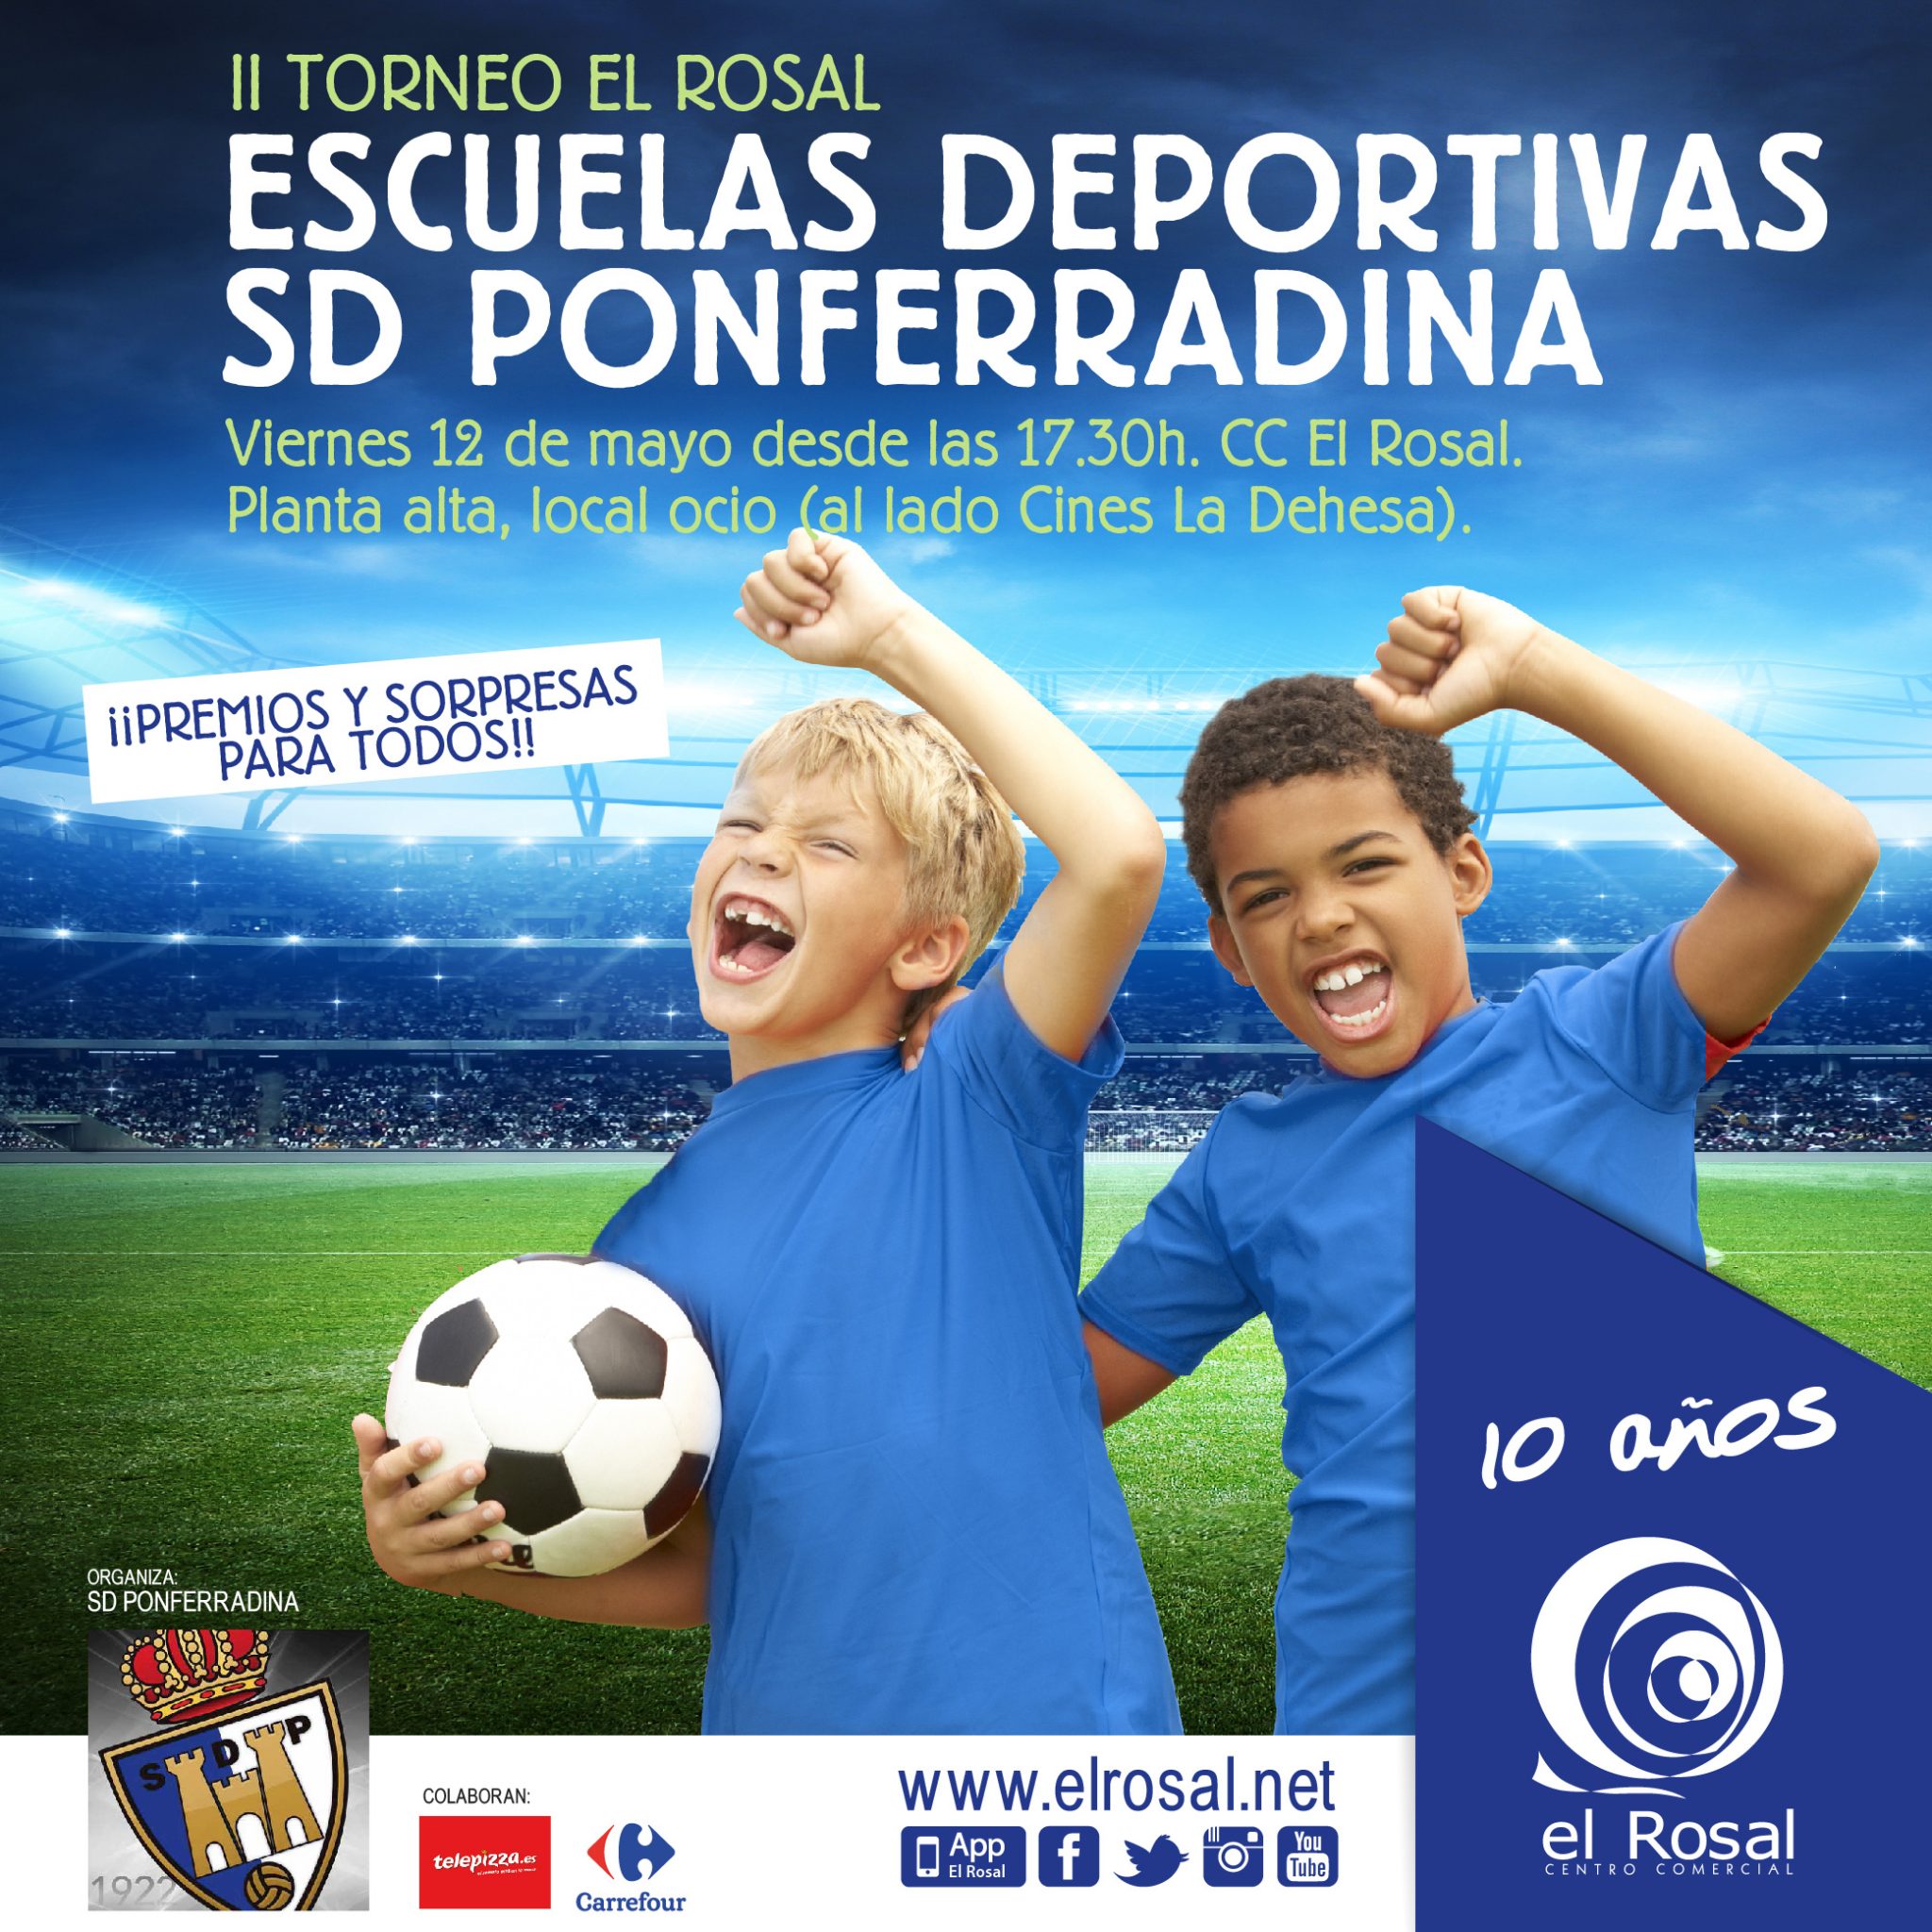 II Torneo El Rosal Escuelas Deportivas SD Ponferradina 2